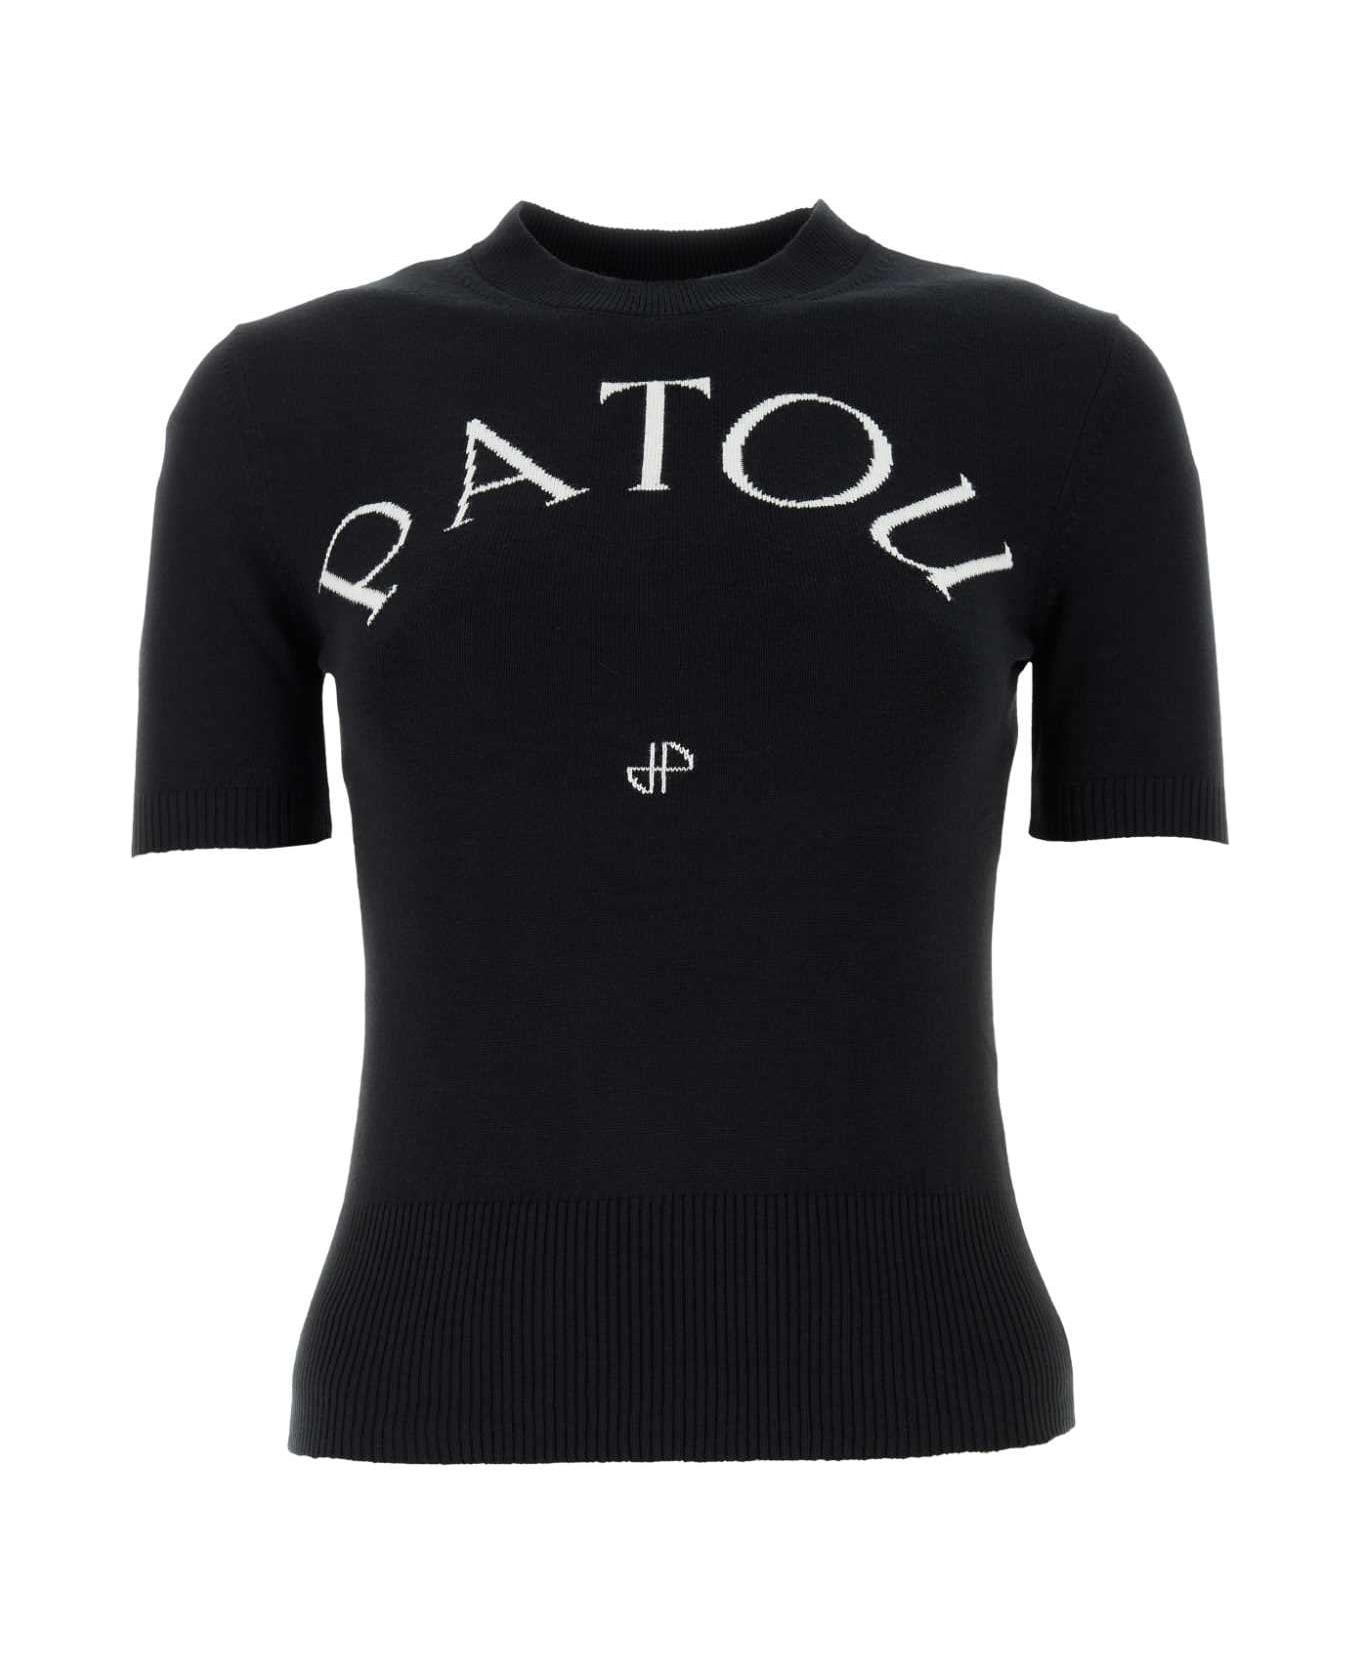 Patou Black Cotton Blend T-shirt - BLACK